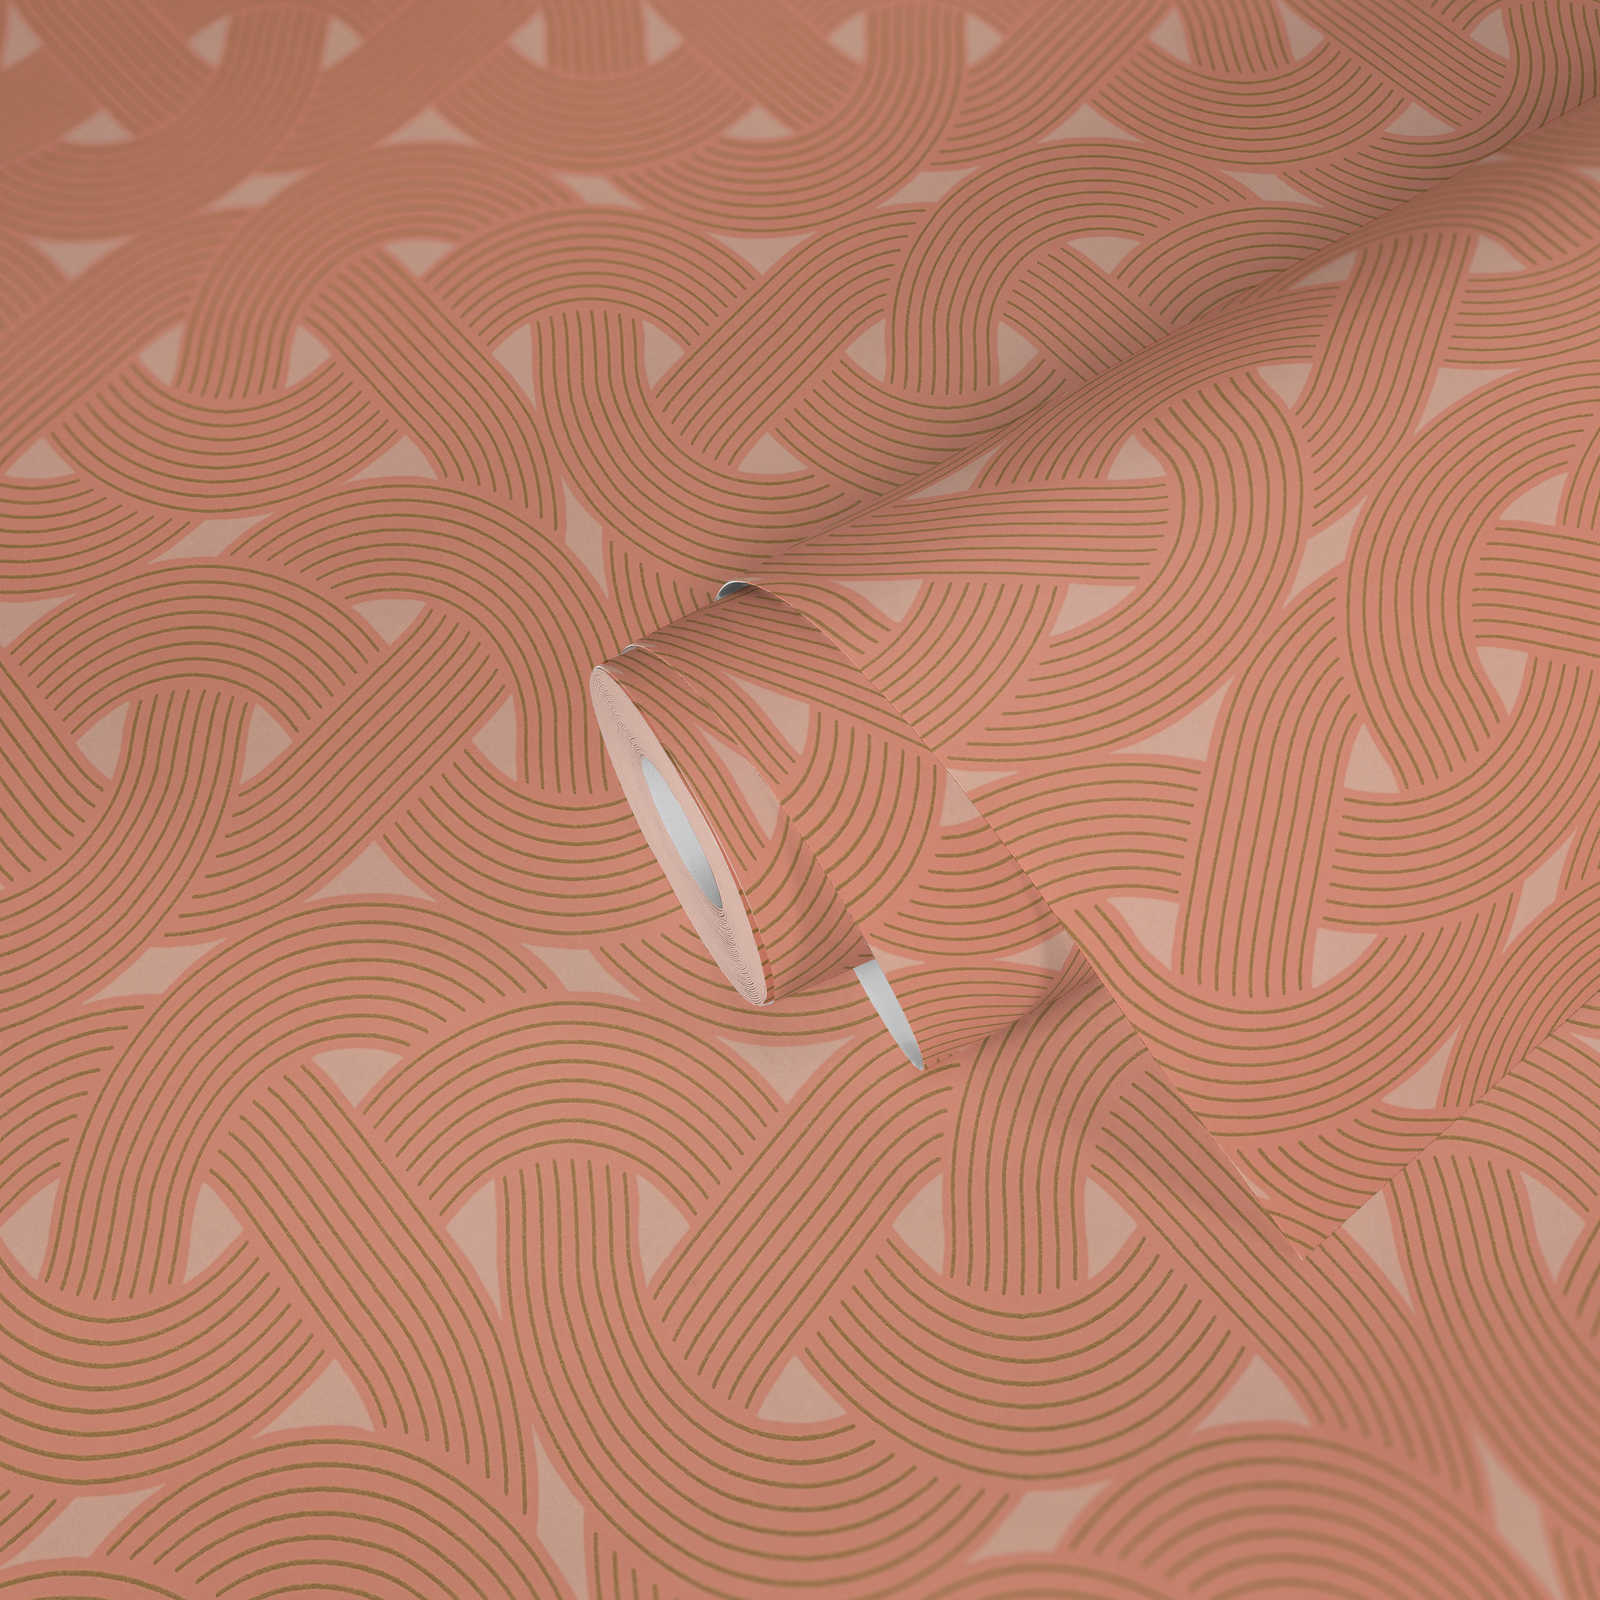             Graphisches Linienmuster im Art déco Style – Orange, Kupfer
        